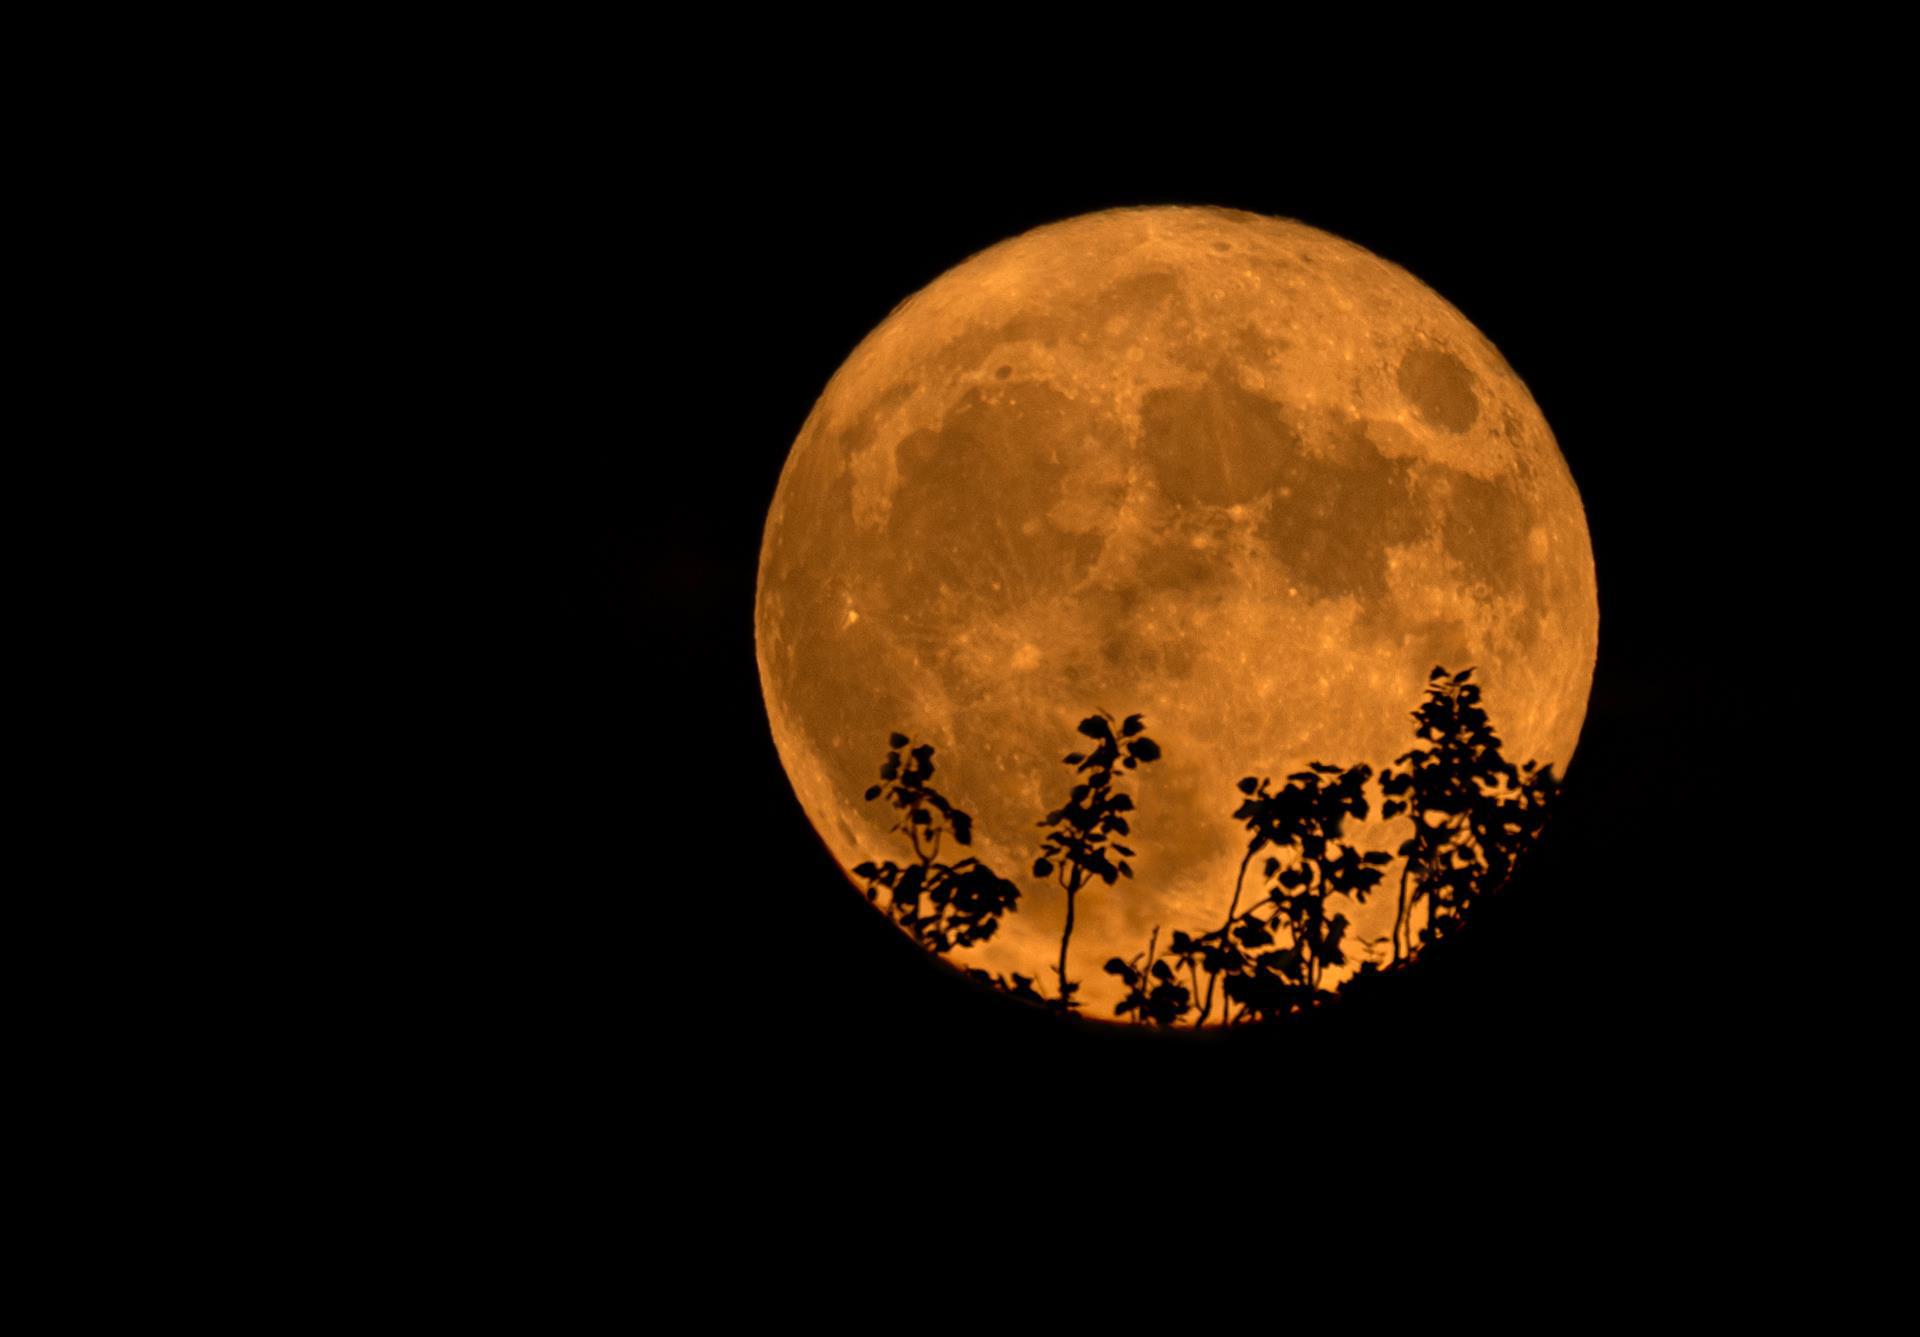 El eventro astronómico 'Superluna de ciervo' ha brindado experiencias magníficas a fotógrafos del mundo.